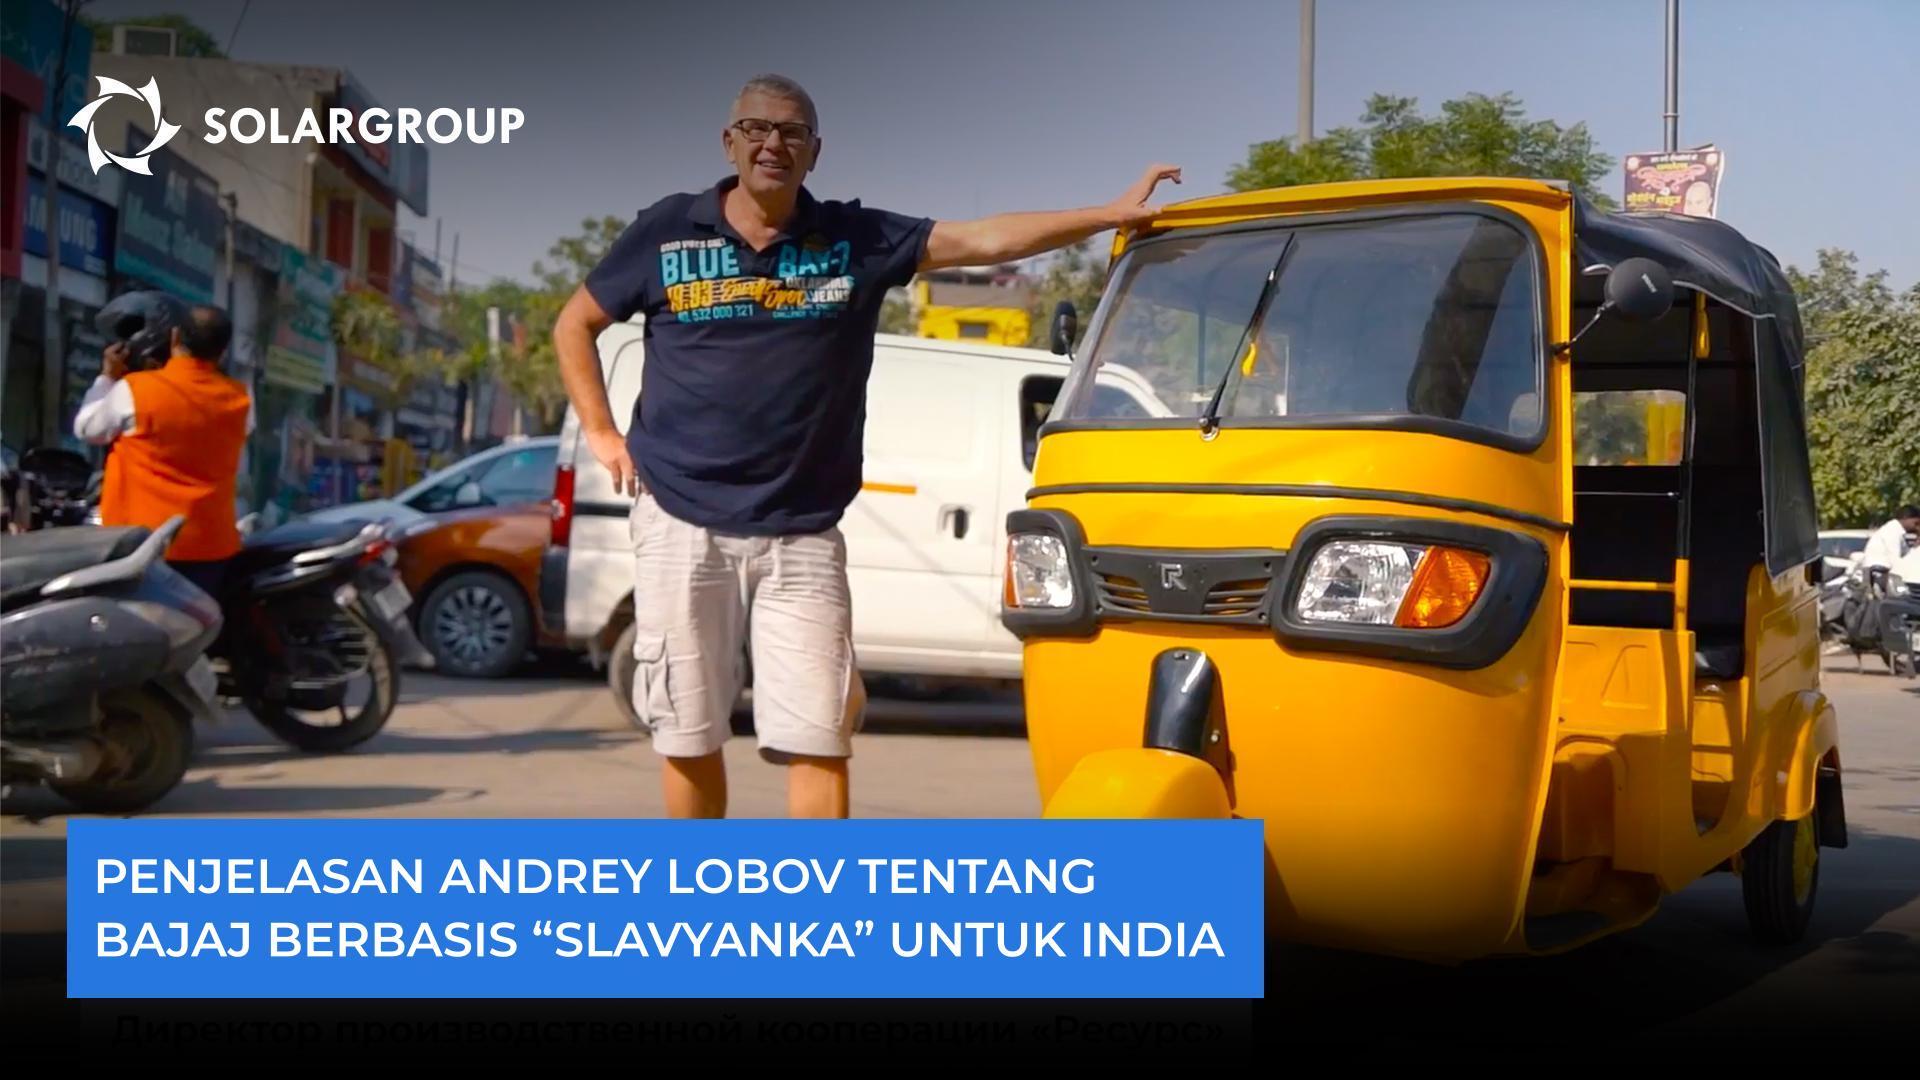 "Motor listrik yang mengandalkan teknologi "Slavyanka" akan diminati di sini," Andrey Lobov tentang bajaj untuk India